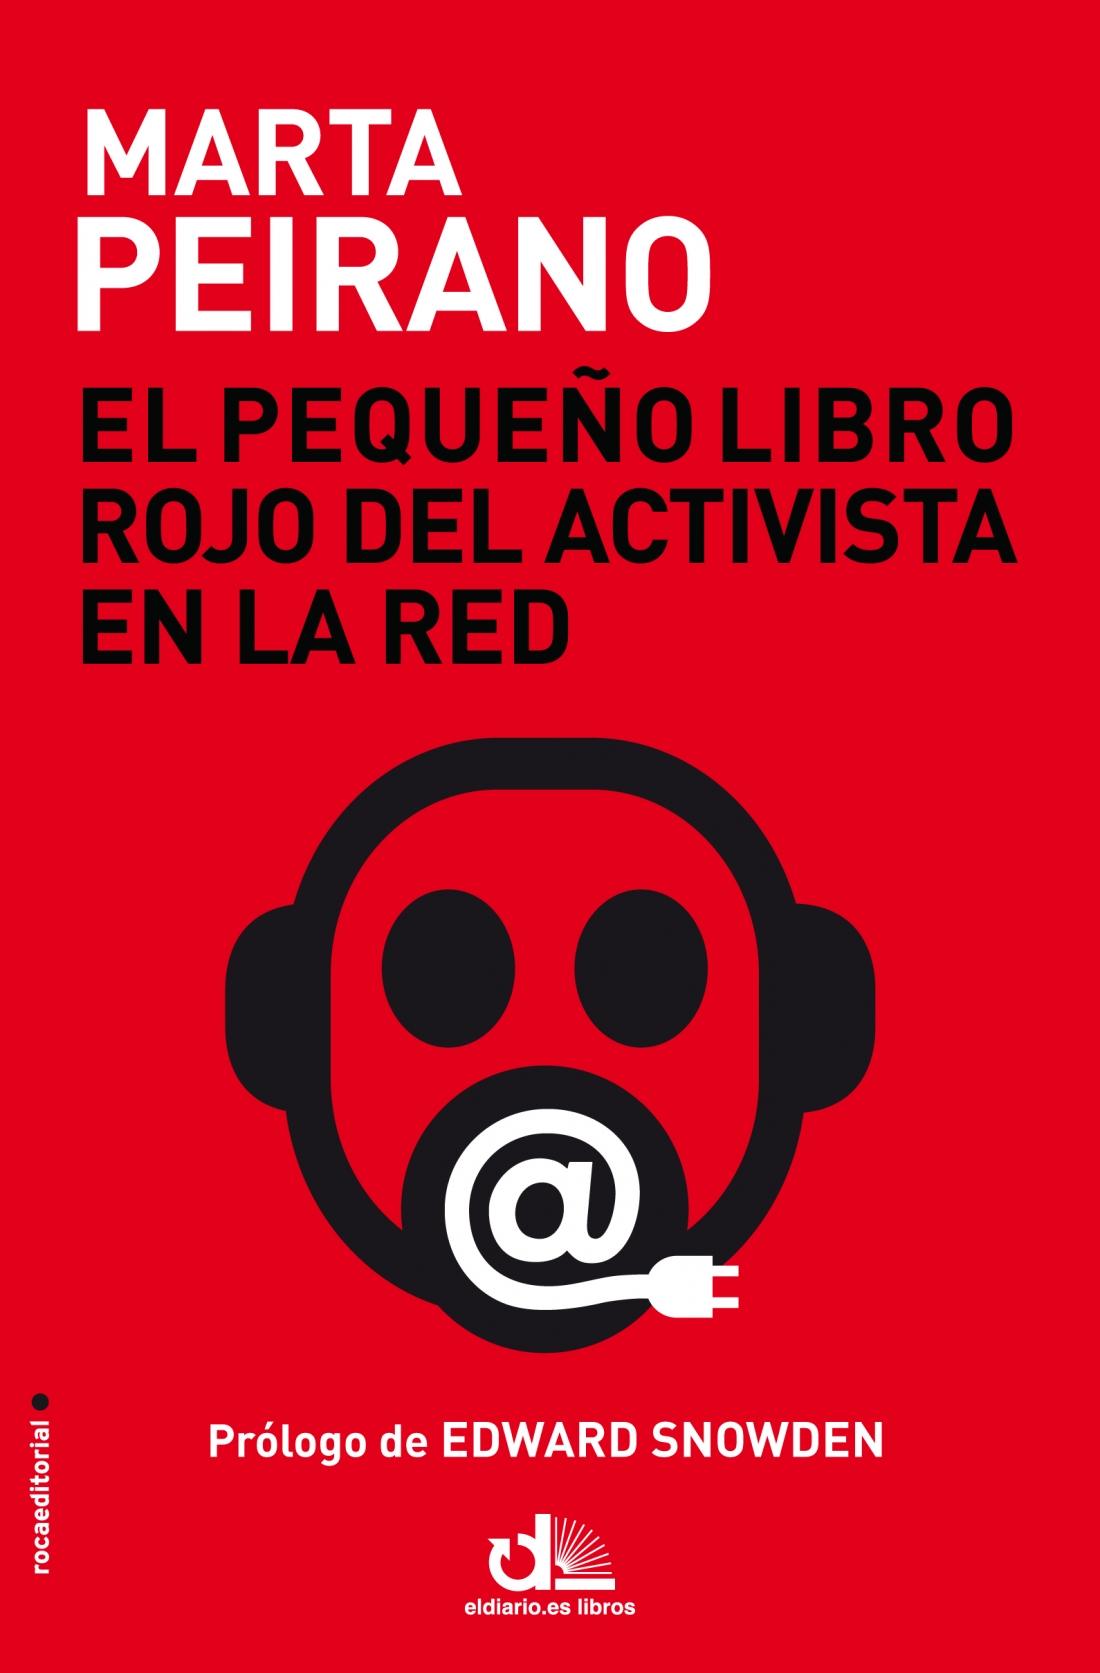 Libro de audio El Pequeño Libro Rojo del Activista en la Red – Marta Peirano